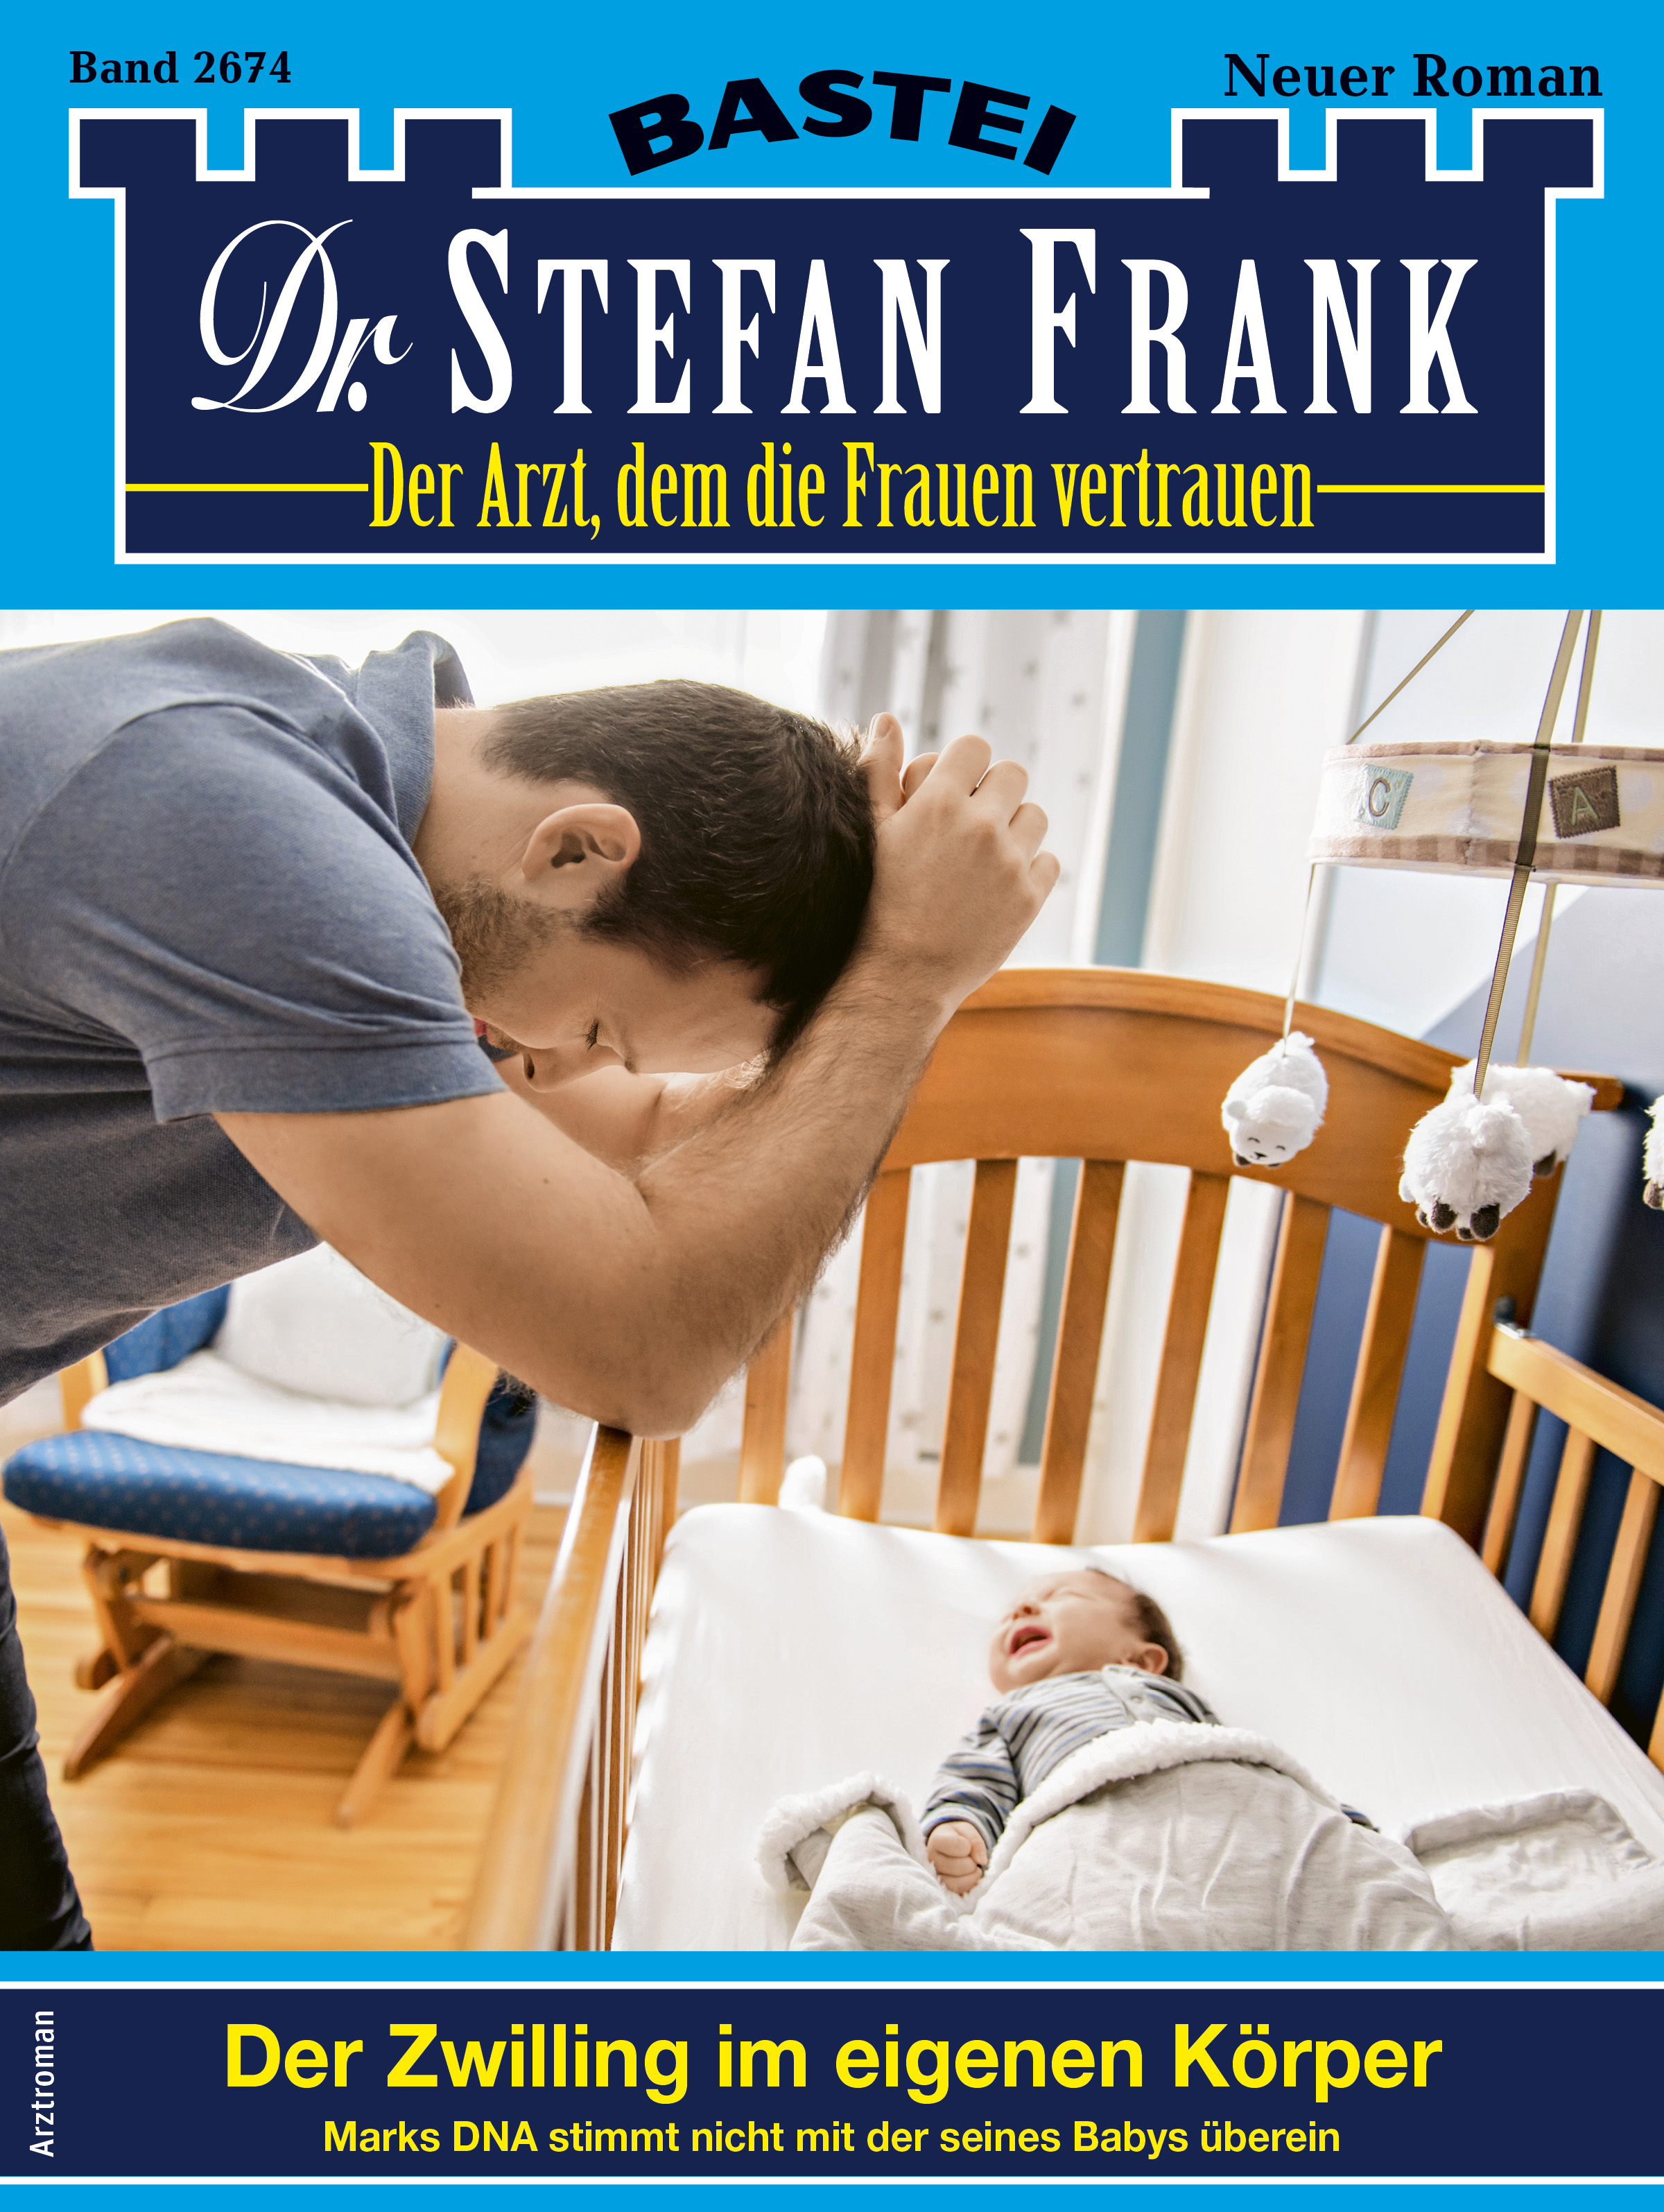 Dr. Stefan Frank 2674